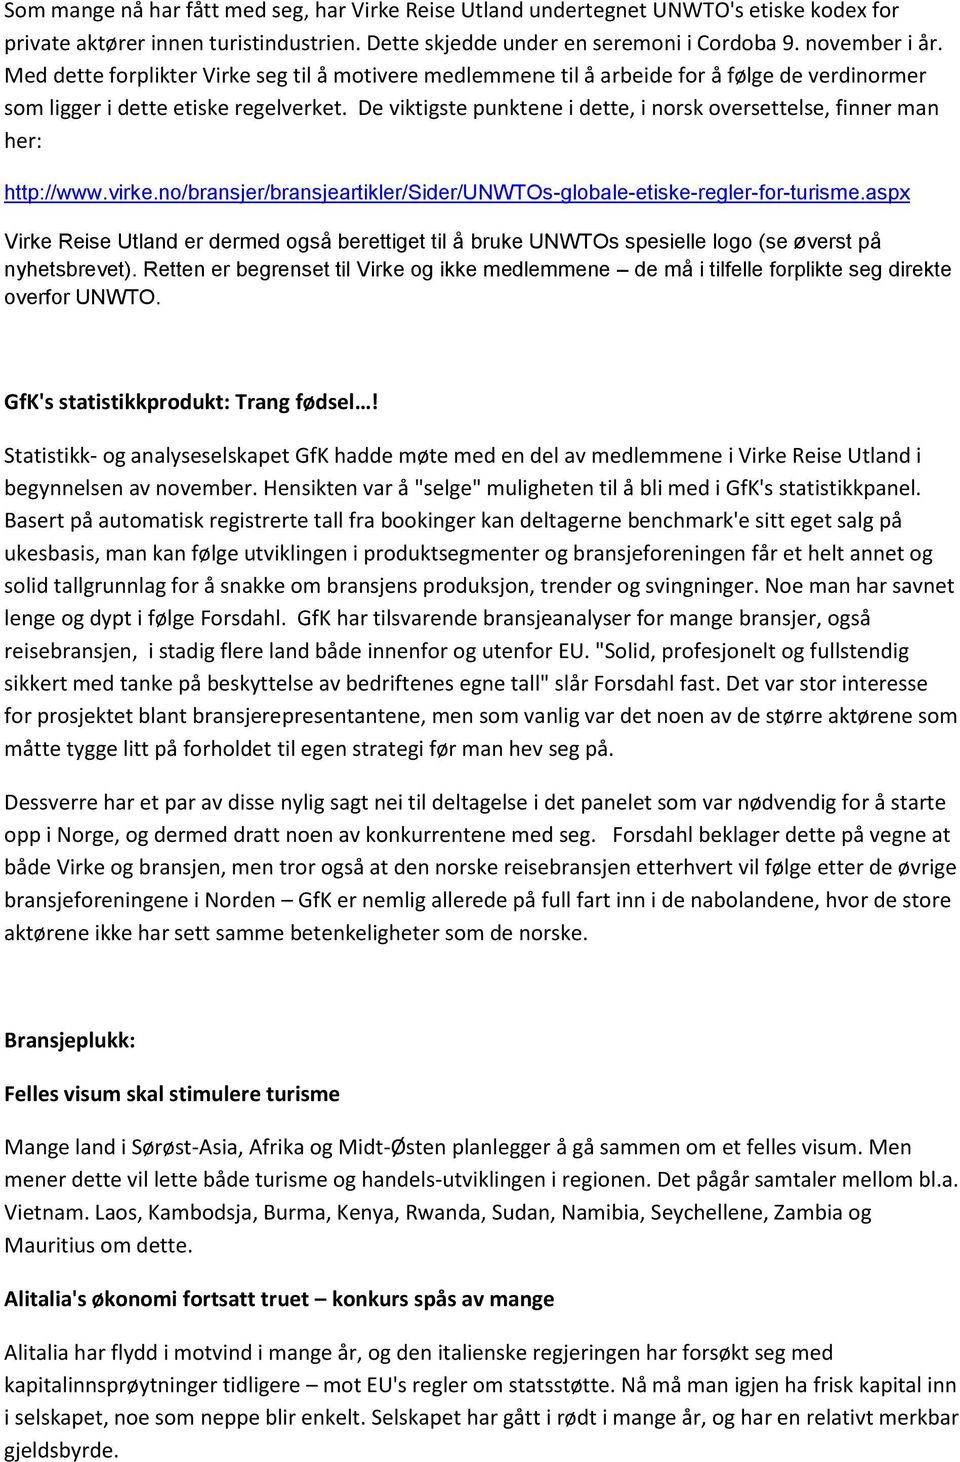 De viktigste punktene i dette, i norsk oversettelse, finner man her: http://www.virke.no/bransjer/bransjeartikler/sider/unwtos-globale-etiske-regler-for-turisme.